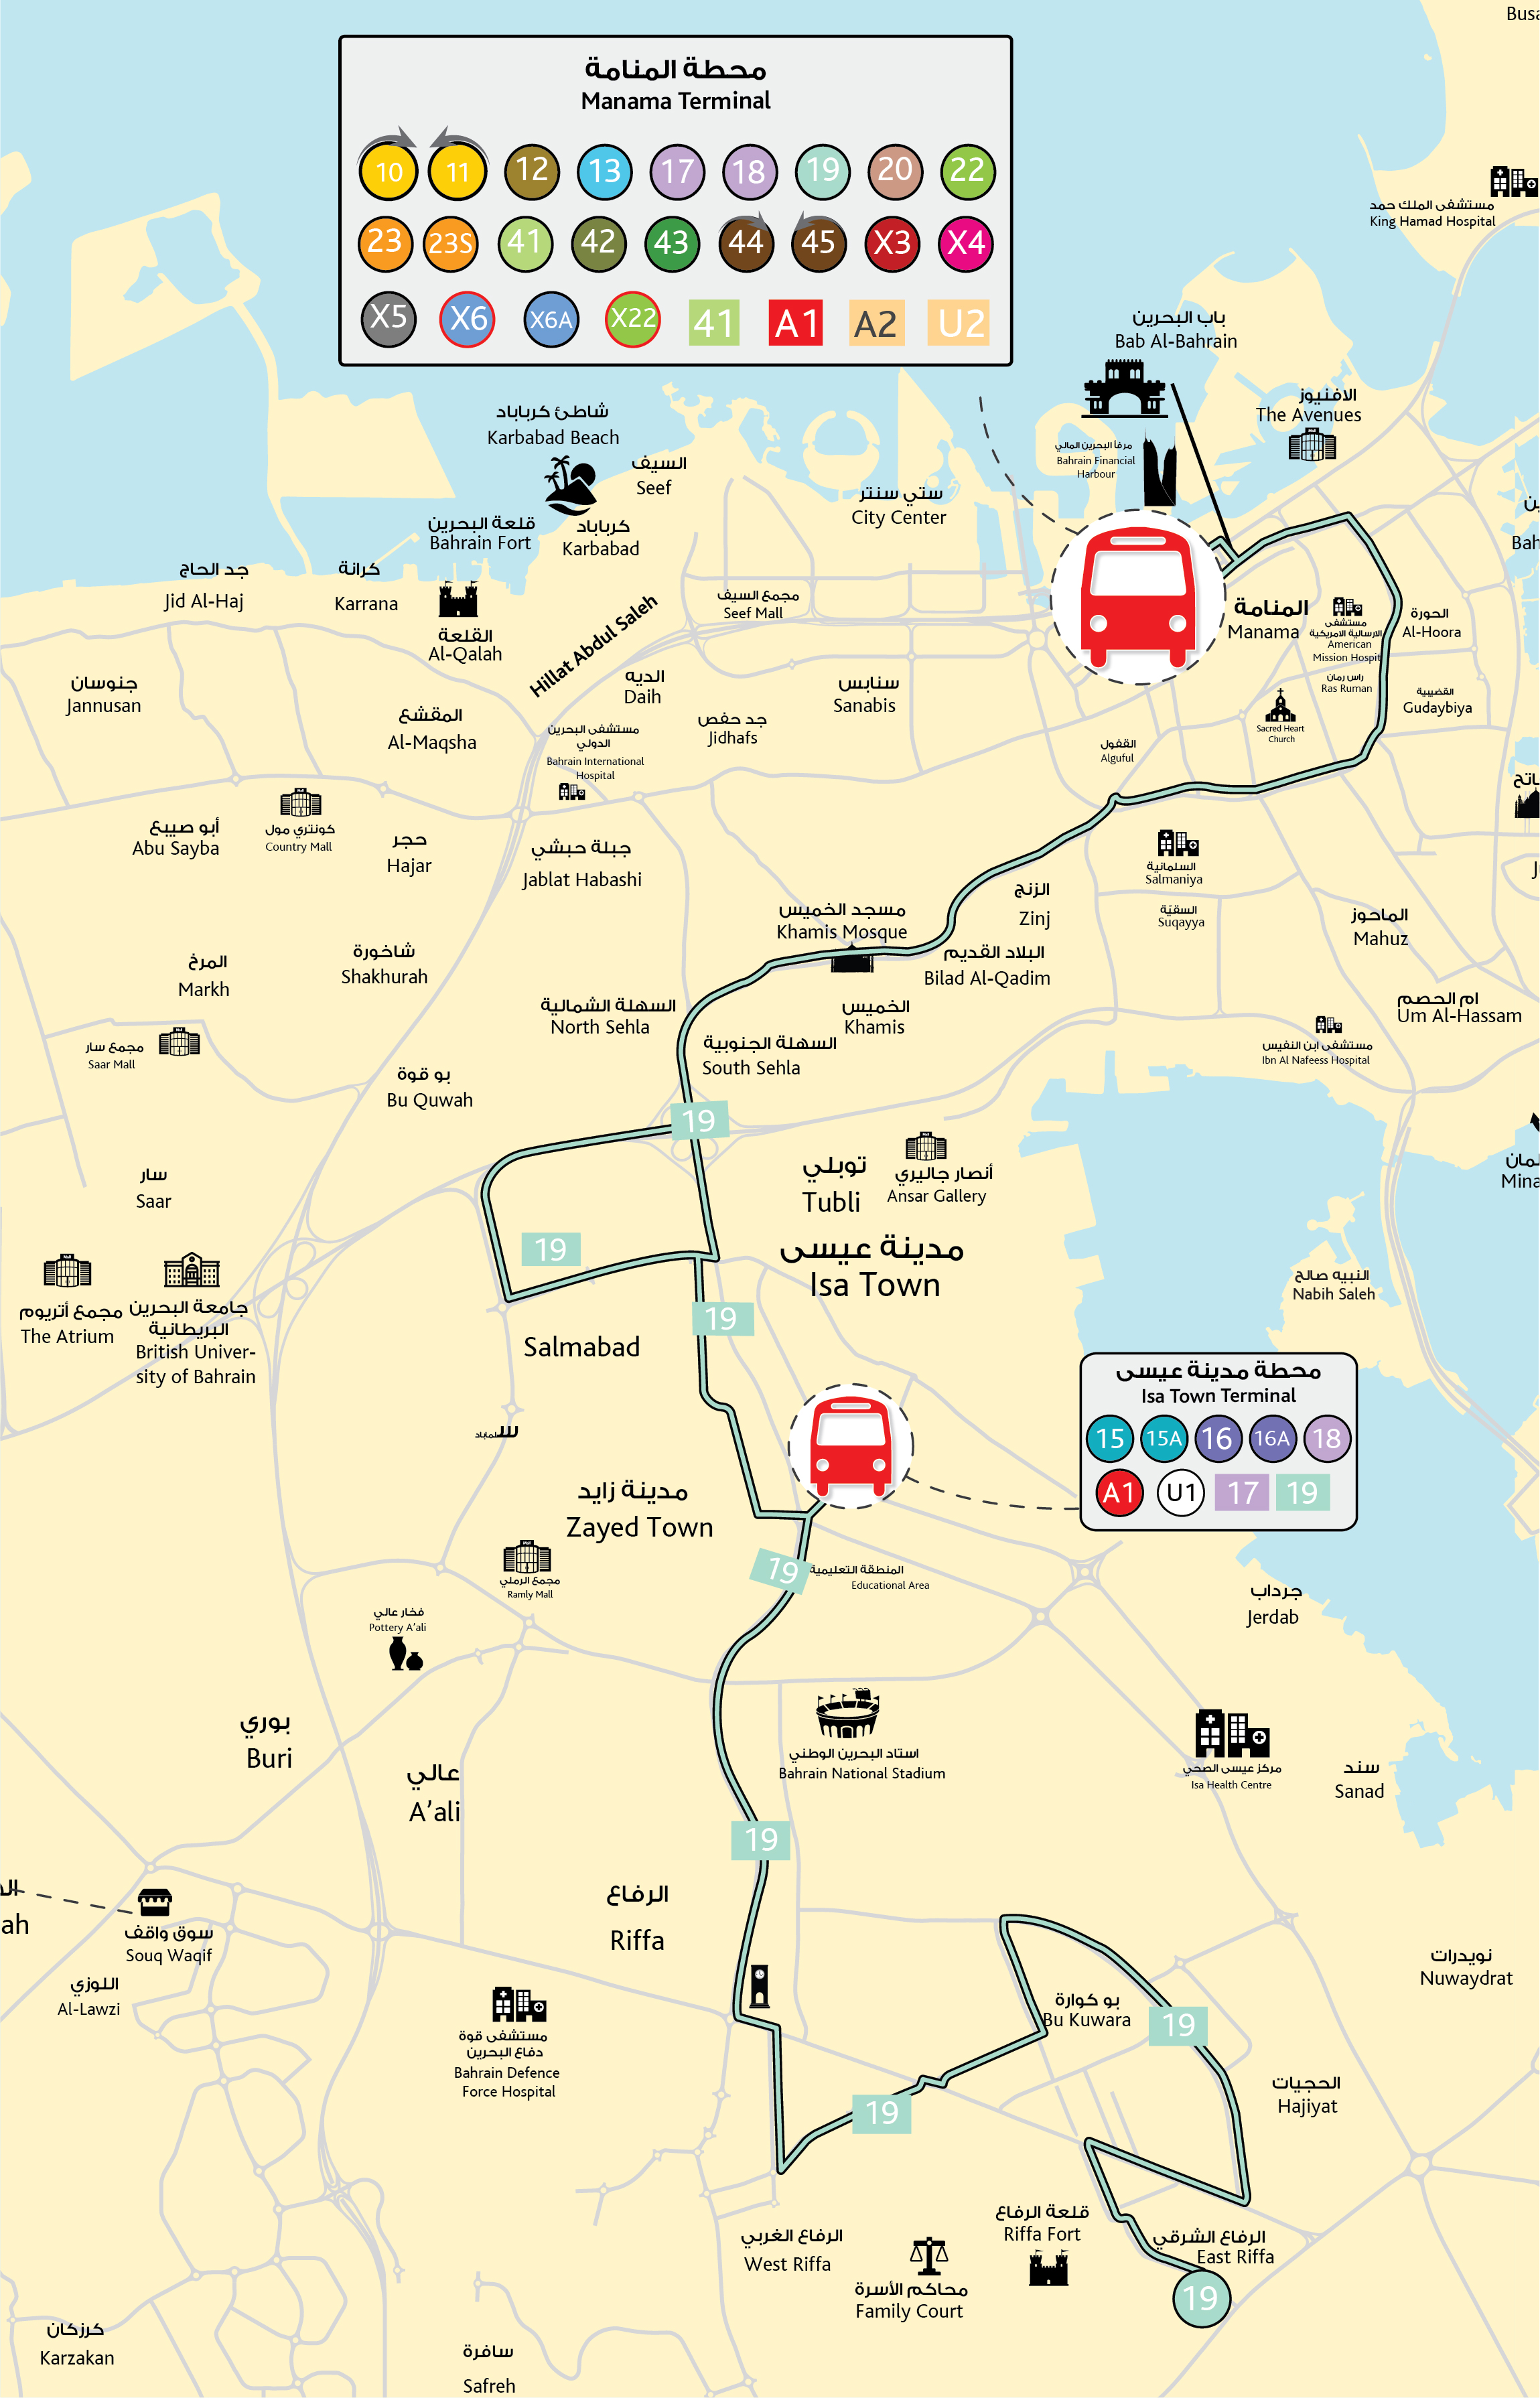 Bahrain Bus Route 19 Riffa - Manama (BPTC 19 Bus)